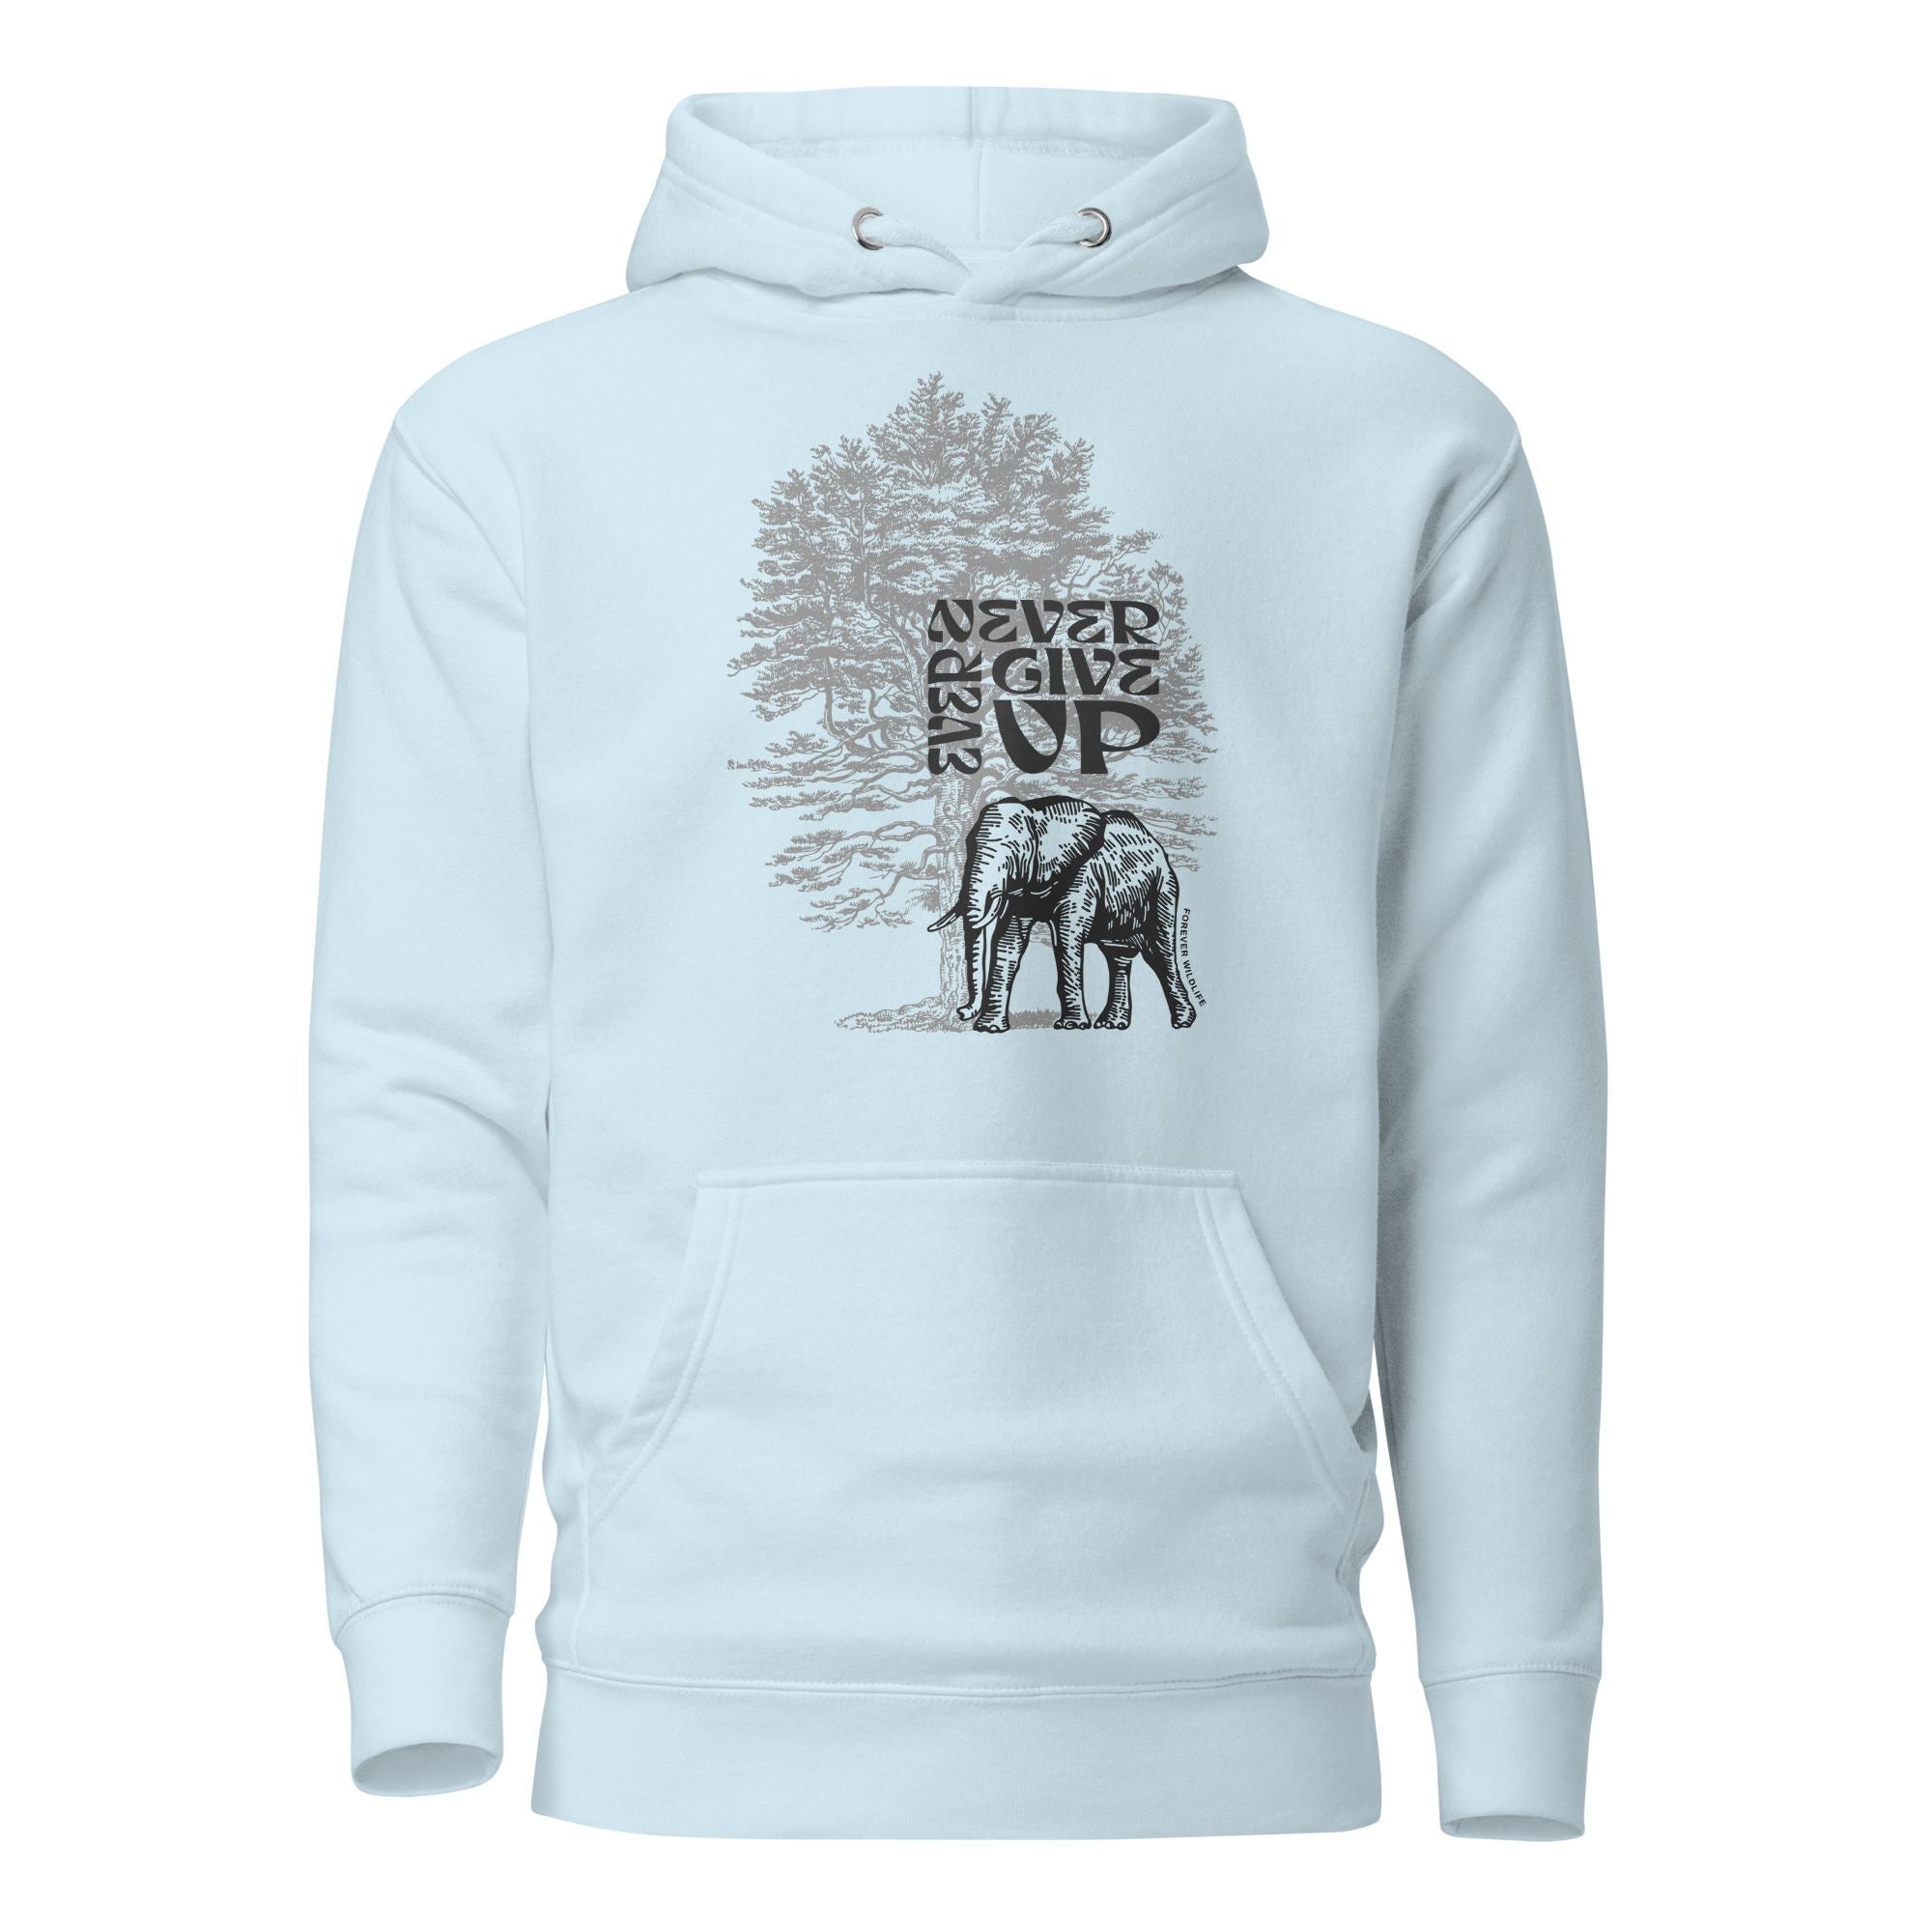 Elephant Hoodie in Sky Blue – Premium Wildlife Animal Inspirational Hoodie Design, part of Wildlife Hoodies & Clothing from Forever Wildlife